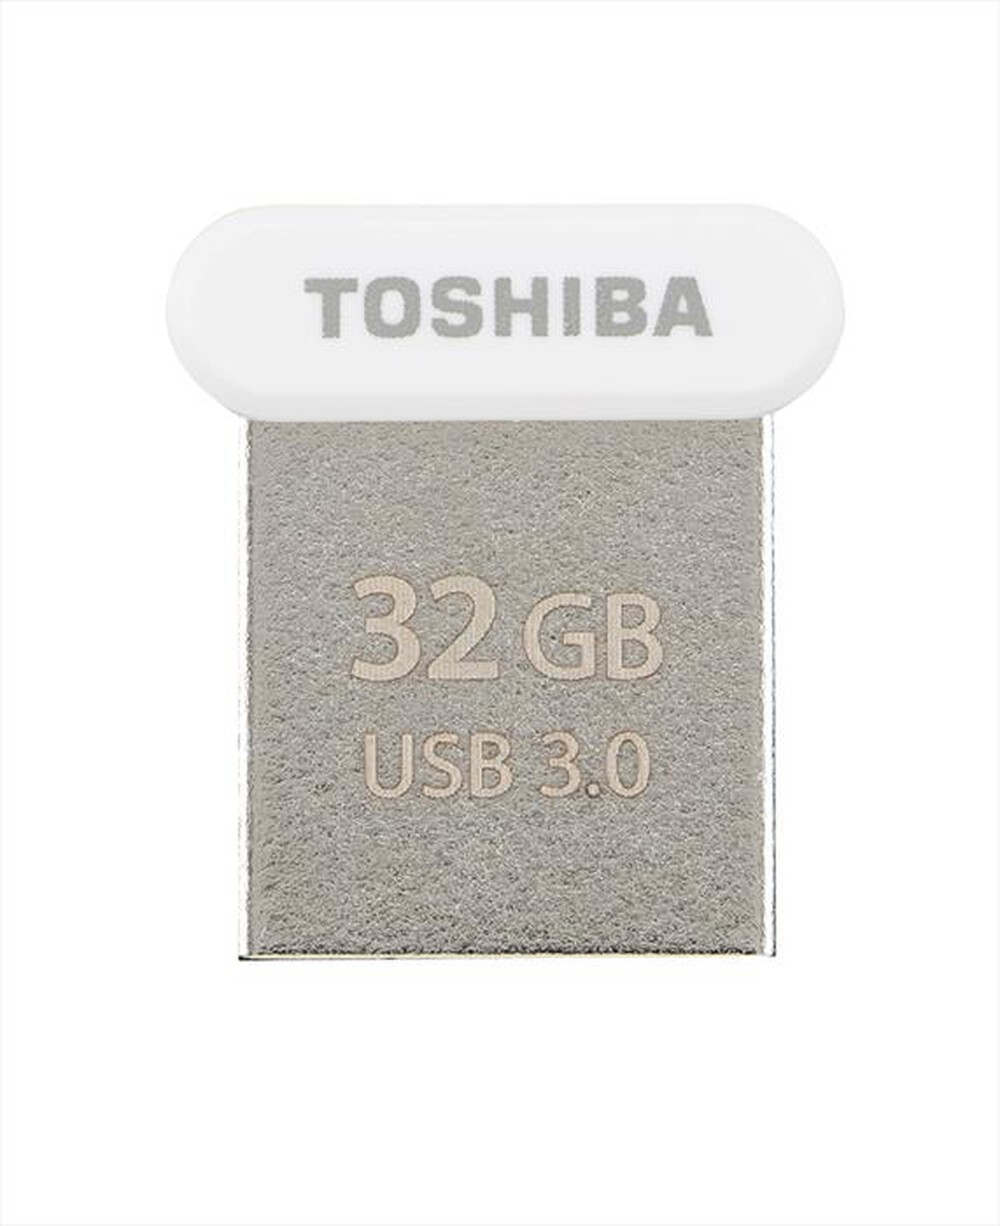 "TOSHIBA - TOWADAKO PENDRIVE 3.0 32G-BIANCO"